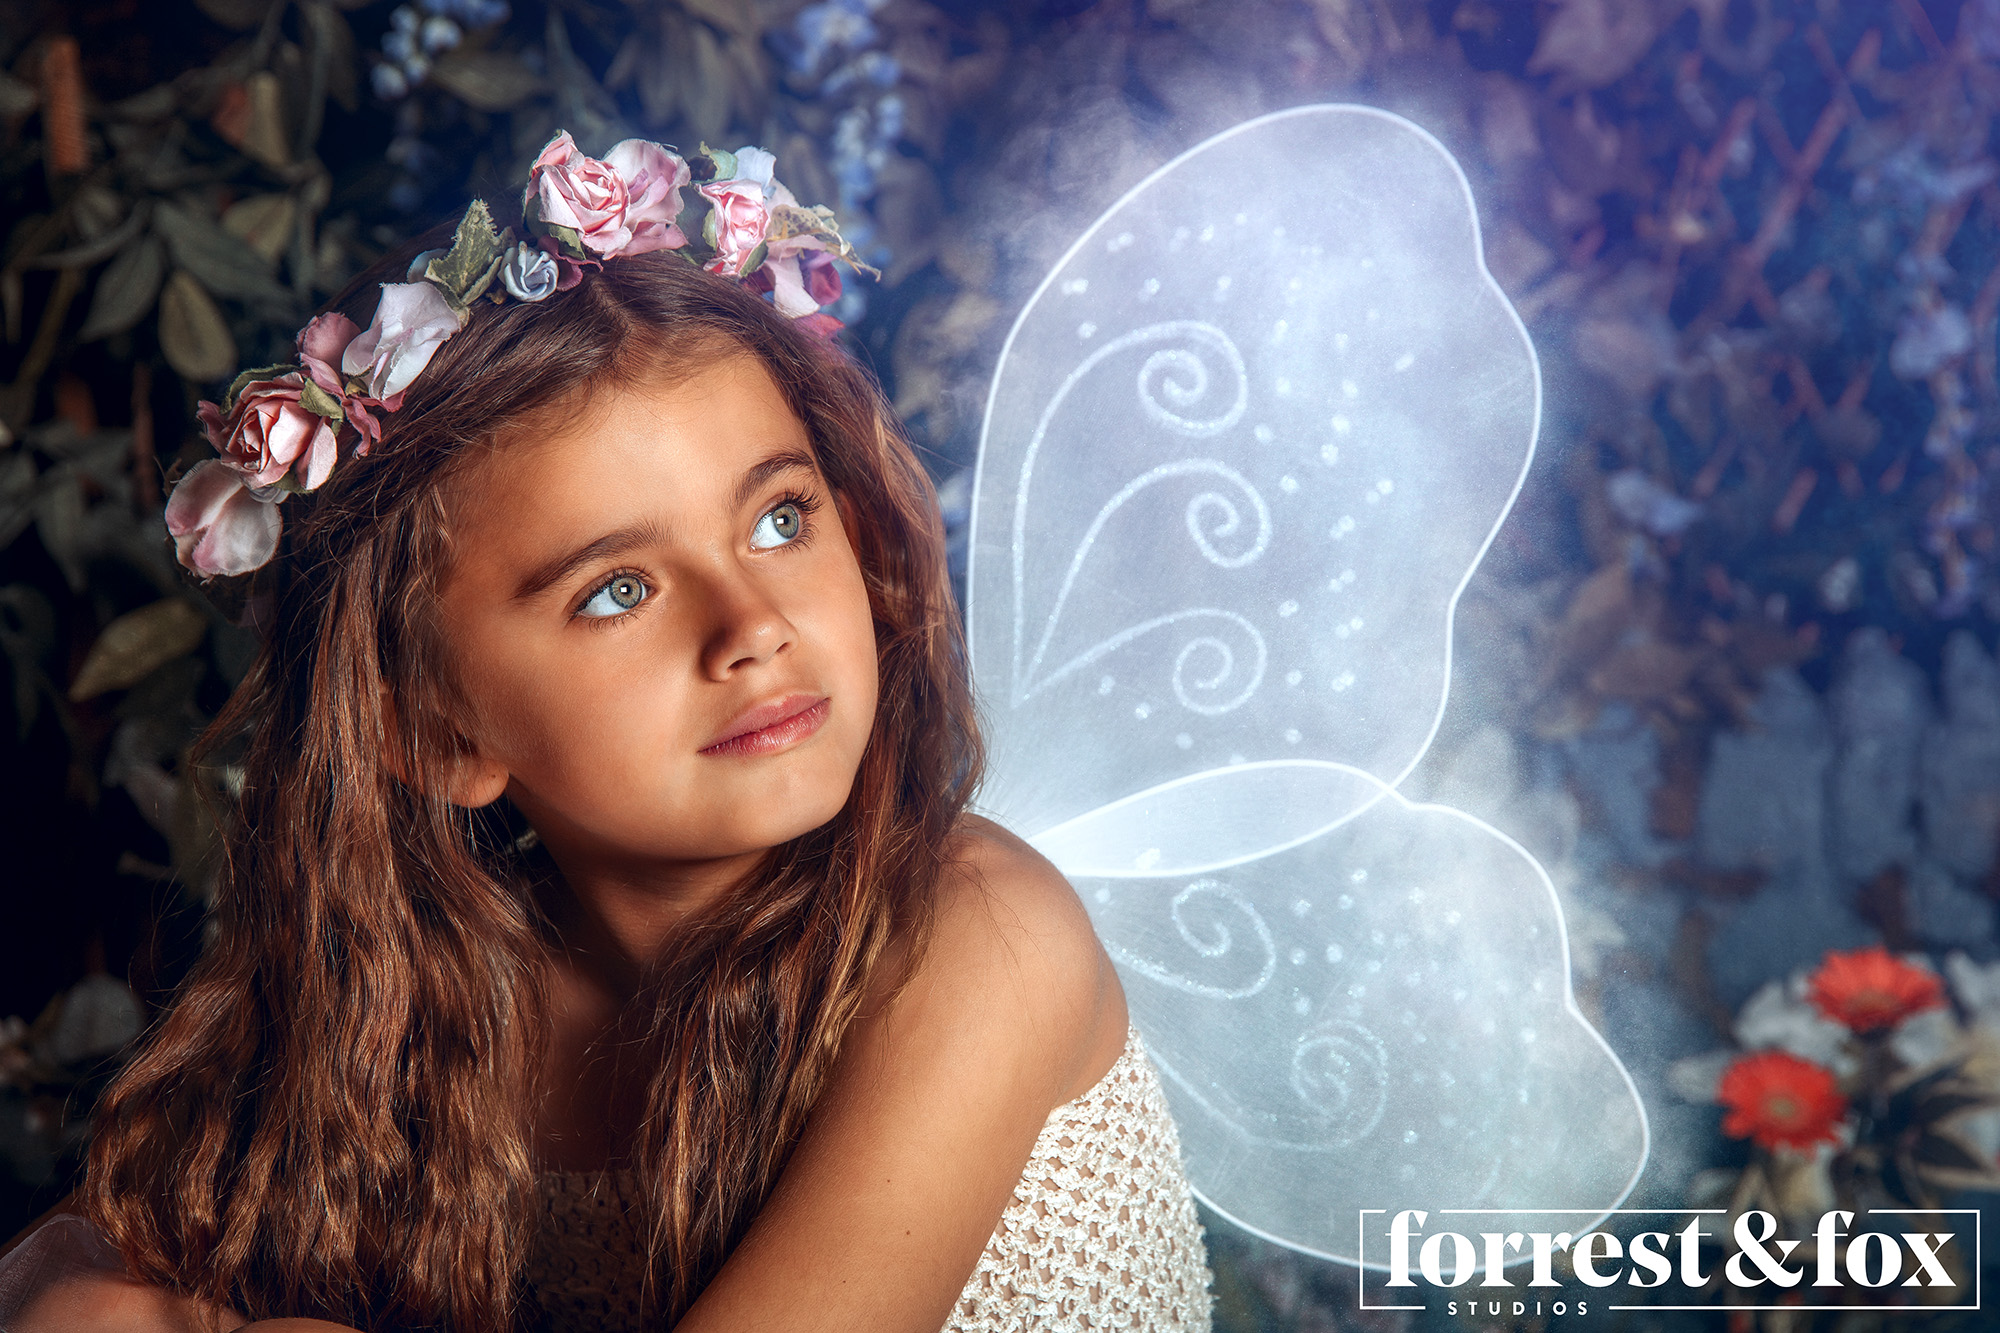 Fairies Forrest & Fox